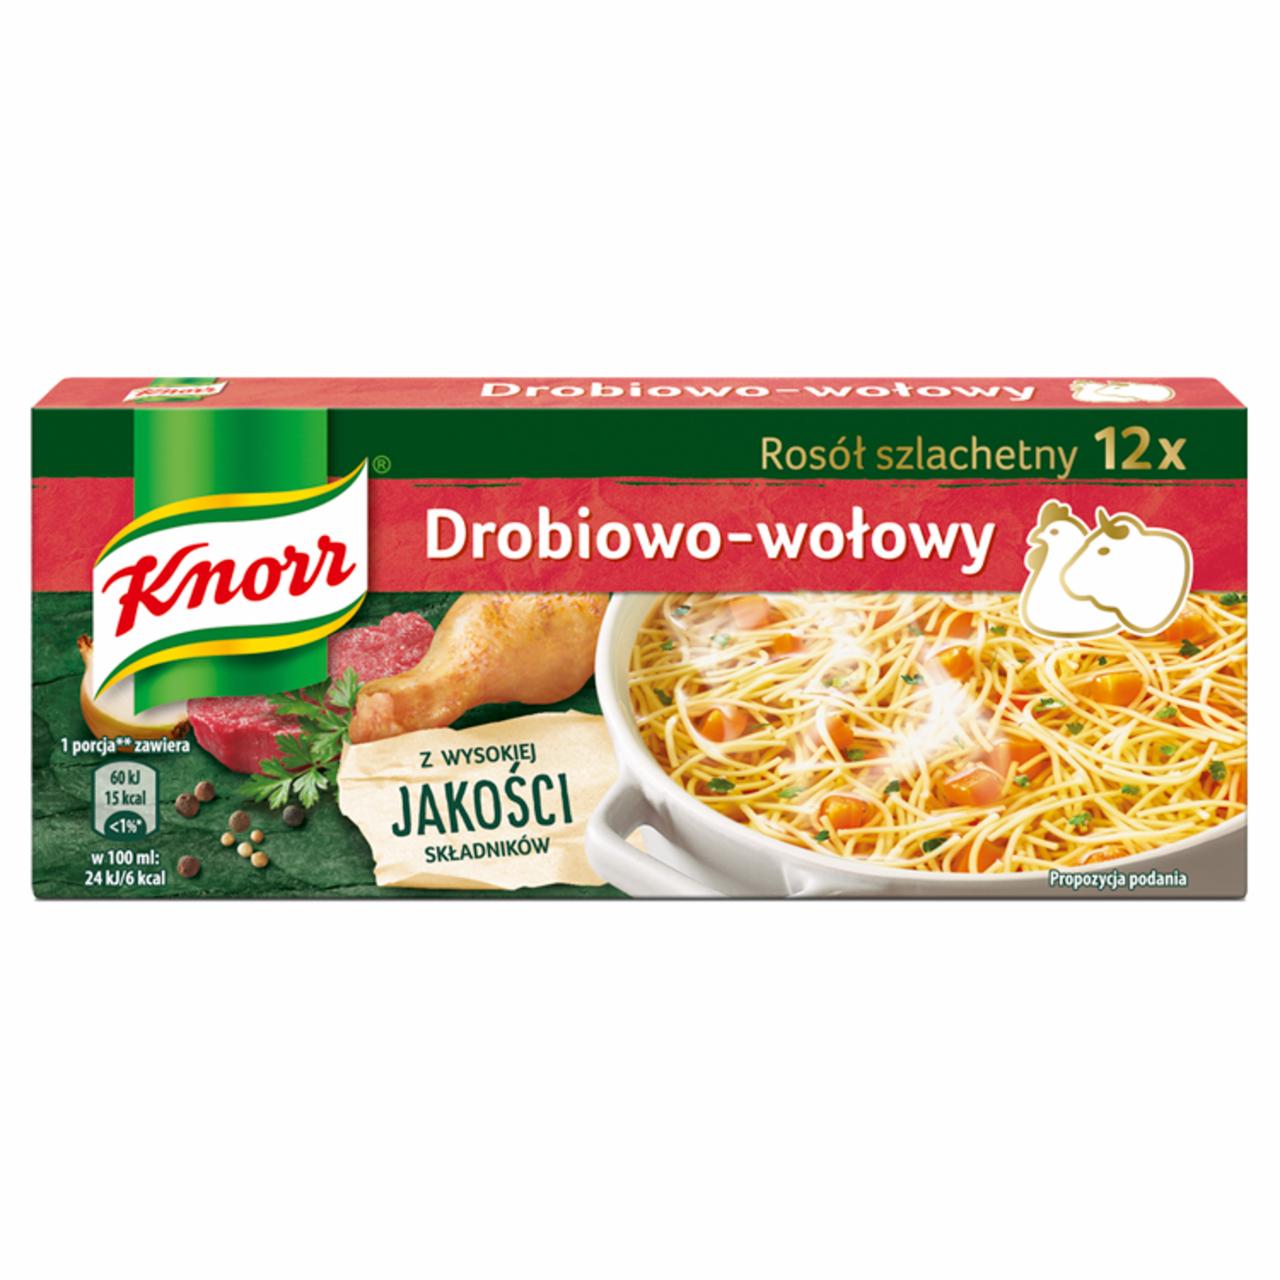 Zdjęcia - Knorr Rosół szlachetny drobiowo-wołowy 120 g (12 x 10 g)